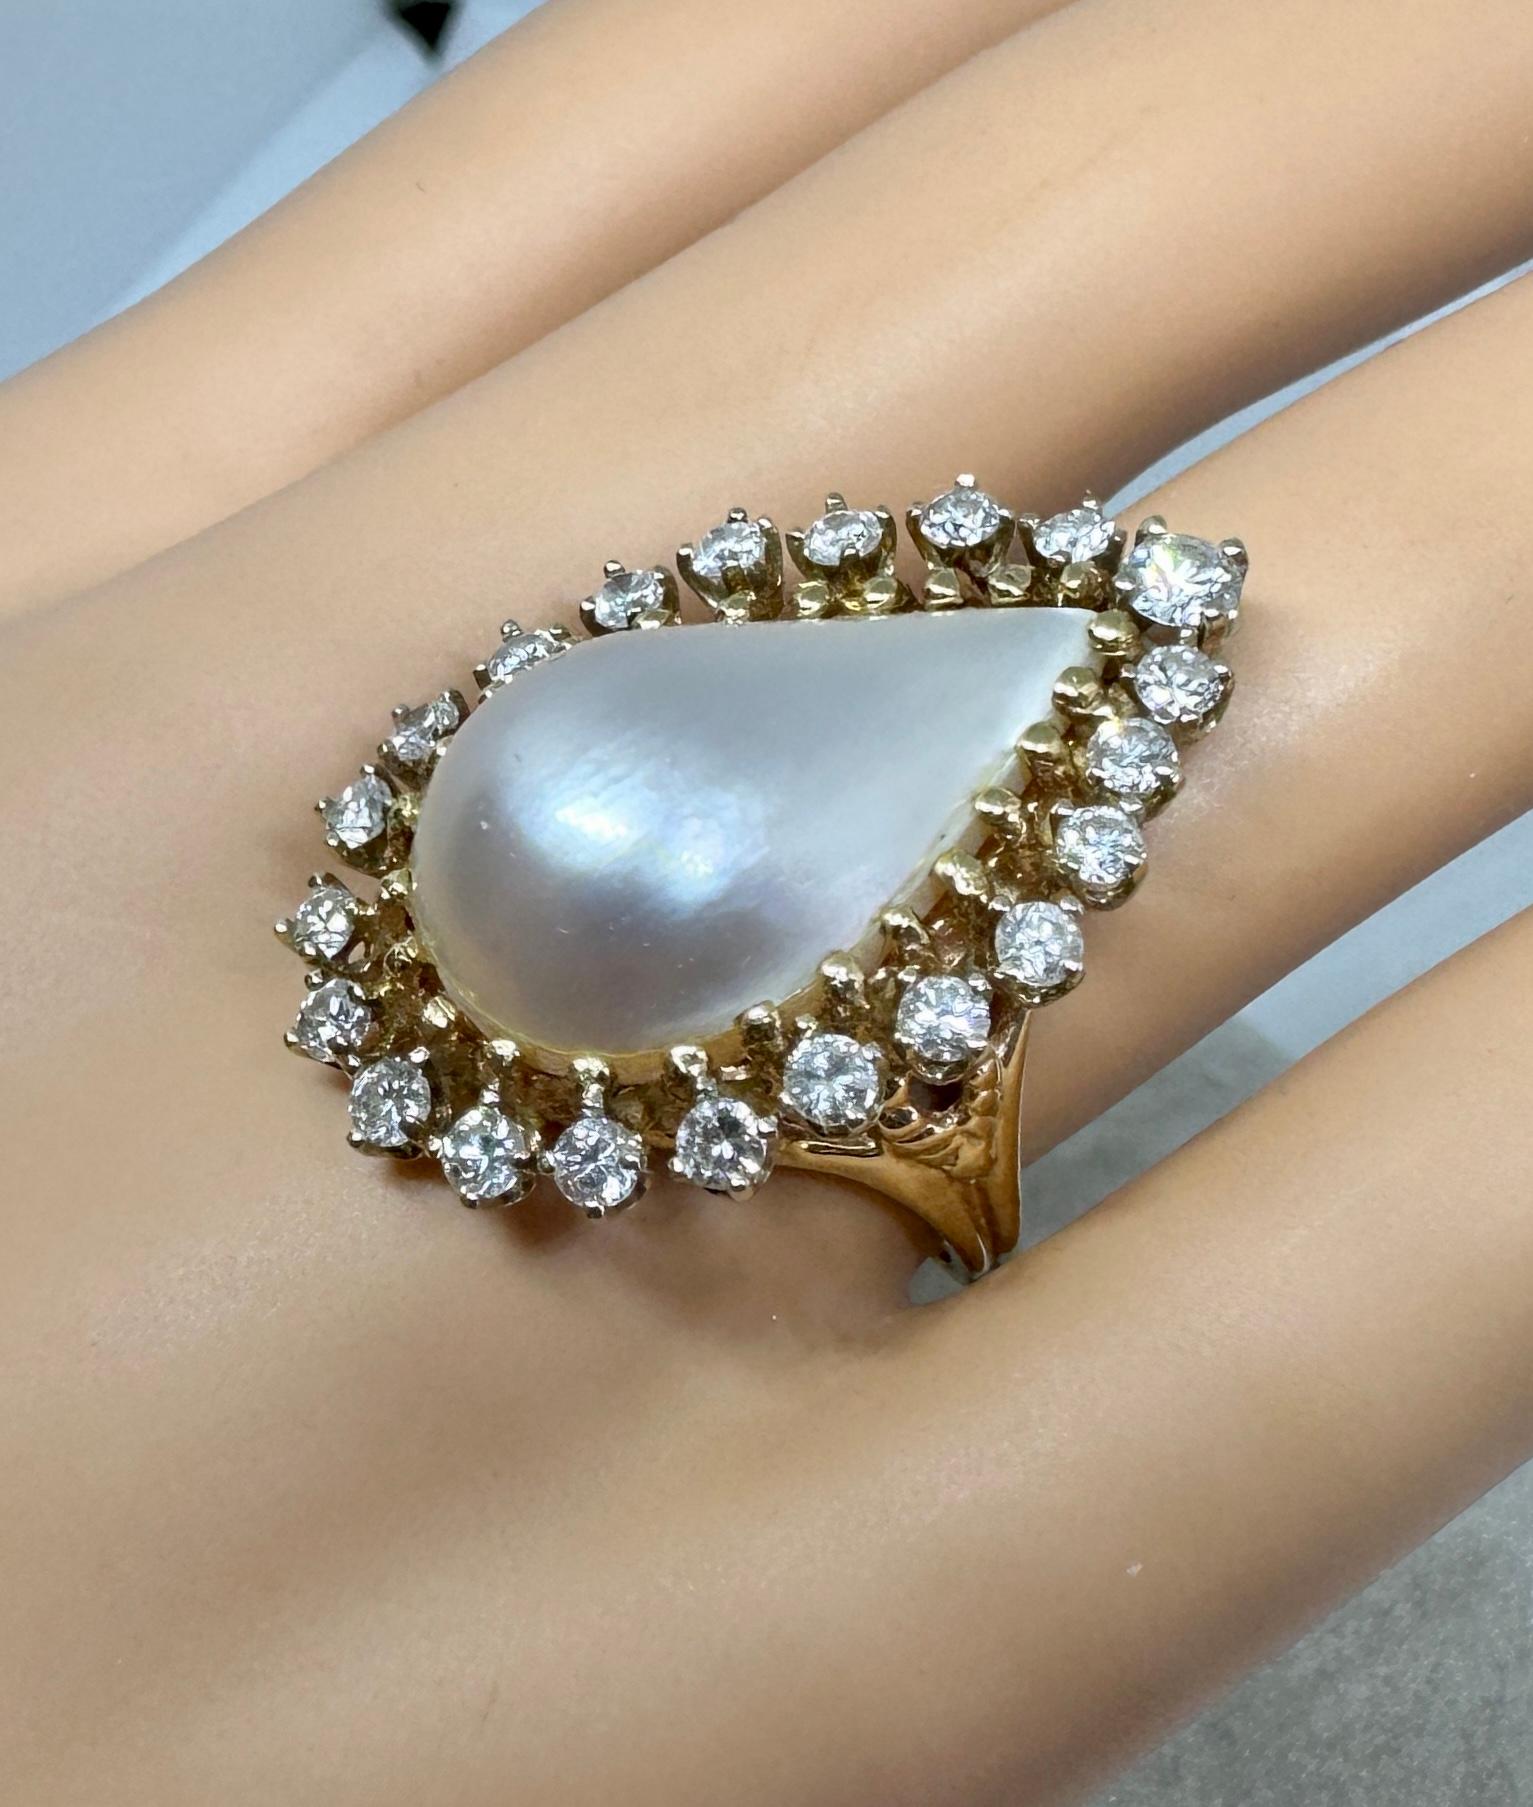 Dies ist eine wunderschöne Mabe Perle Cocktail Fashion Ring mit einem Halo von 21 Diamanten von insgesamt etwa 2 Karat in 14 Karat Gelb-und Weißgold.  Der Ring ist eine Diamanten- und Perlen-Extravaganz in ihrer schönsten Form!  In der Mitte